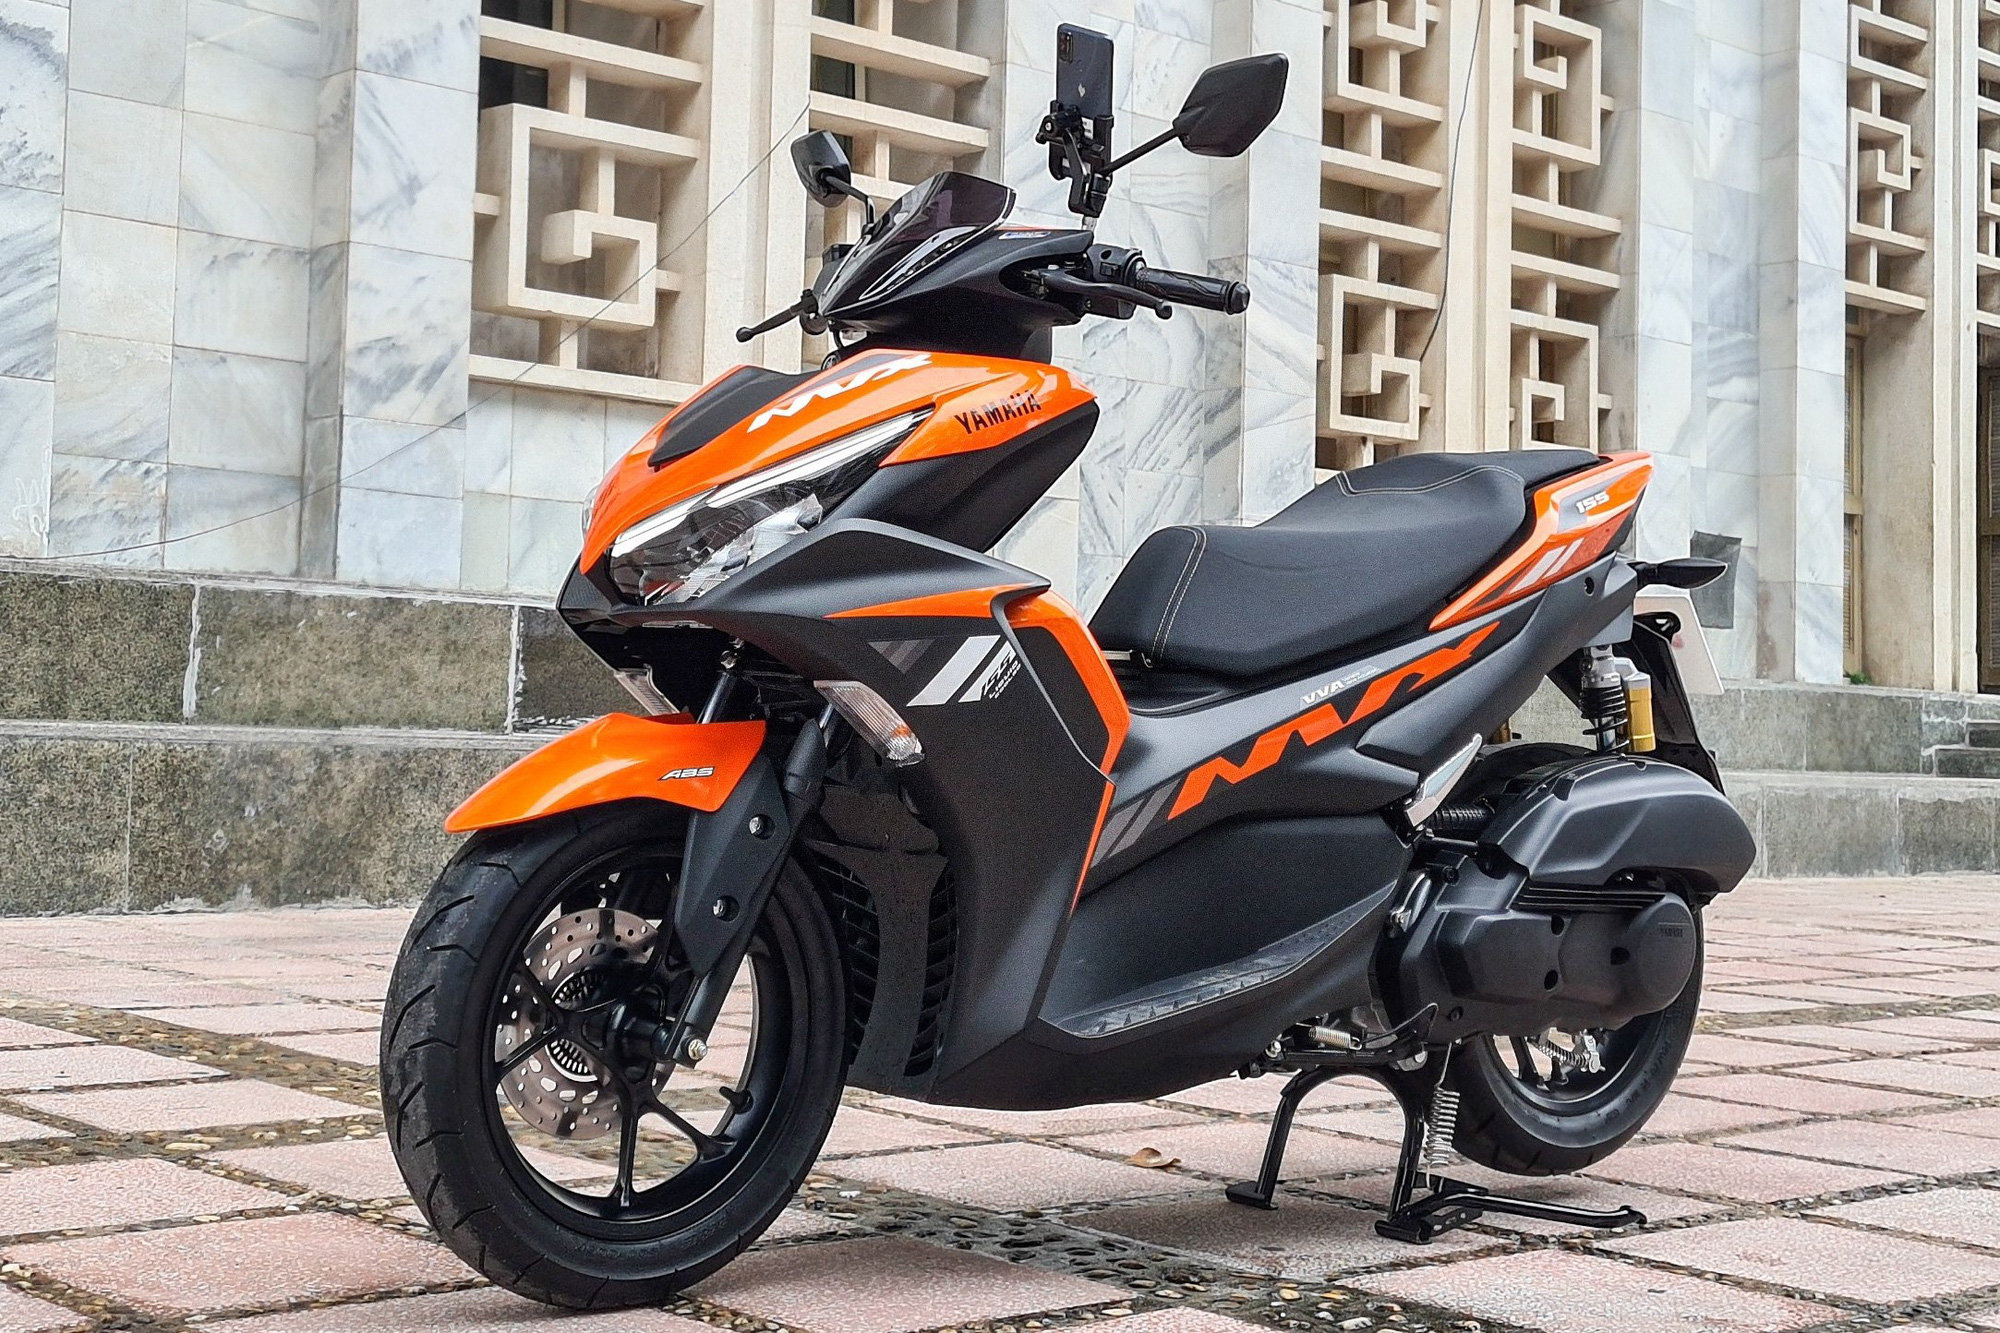 Loạt tân binh tạo điểm nhấn cho thị trường xe máy Việt năm 2020 - Ảnh 5.